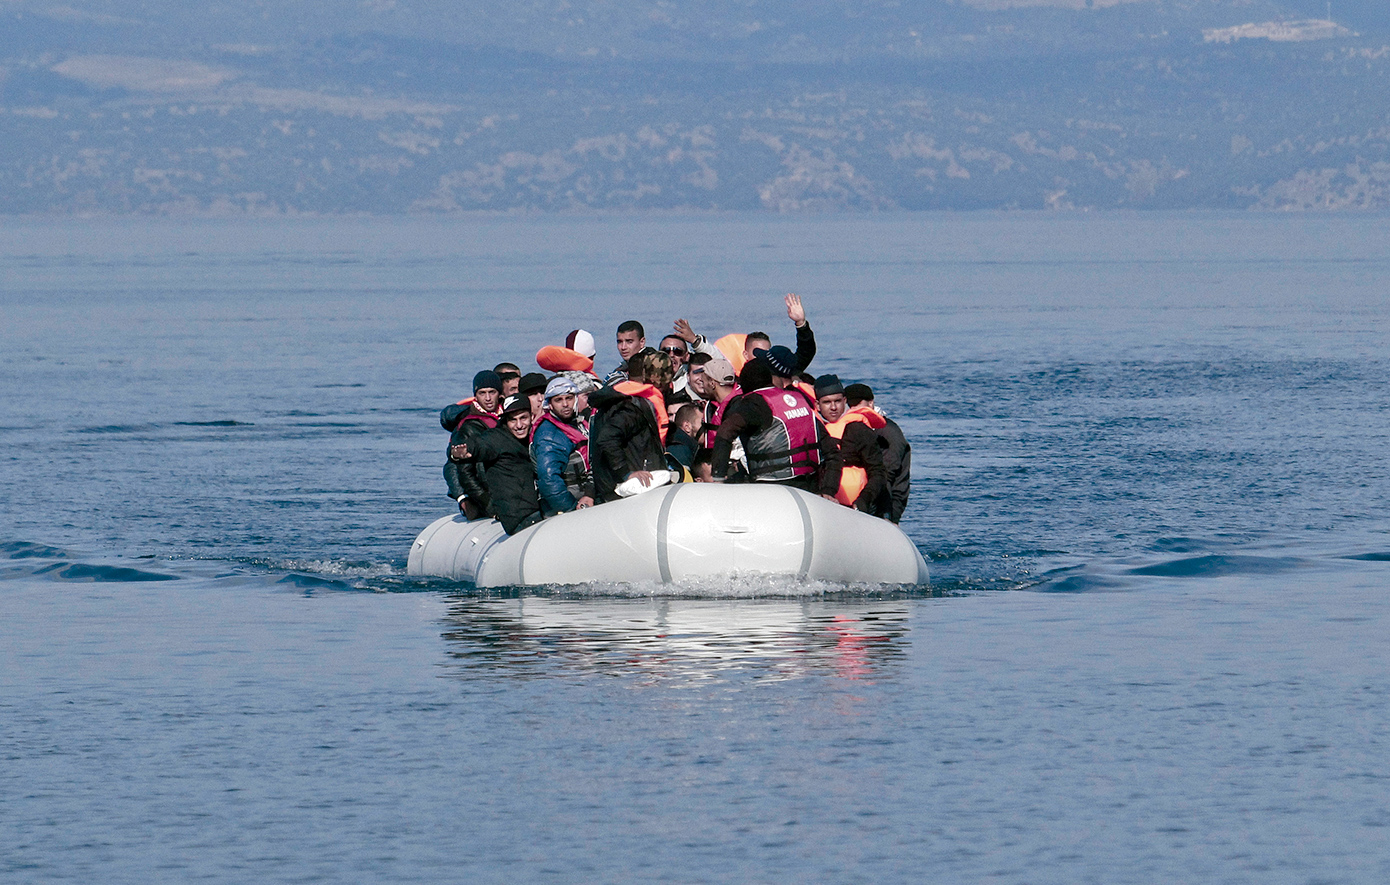 Μειώνονται οι παράνομες αφίξεις από την Τουρκία, σύμφωνα με το υπουργείο Μετανάστευσης και Ασύλου